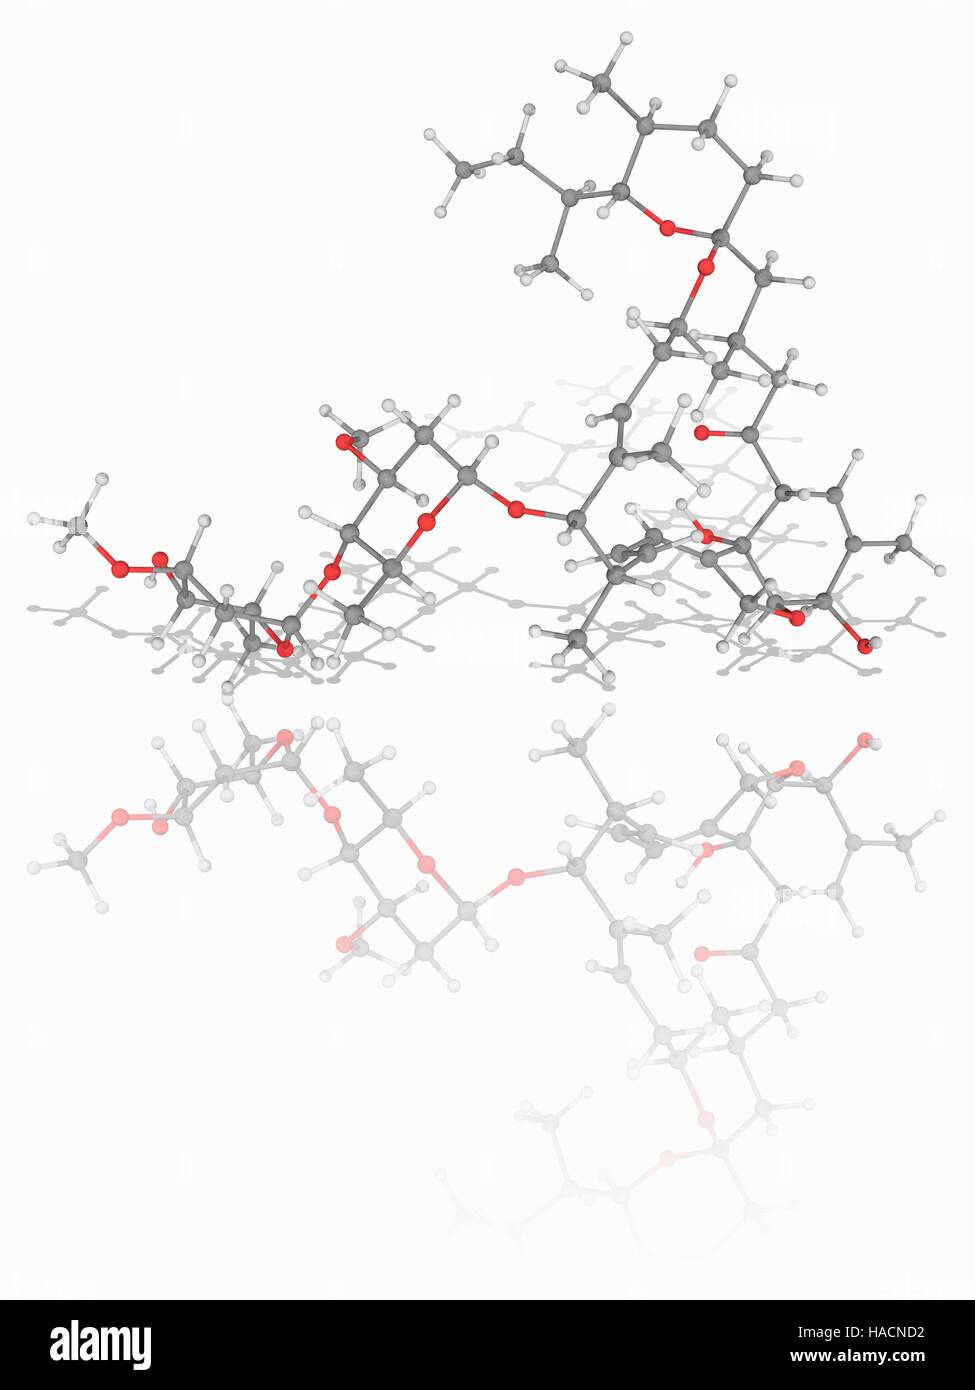 L'ivermectine. Le modèle moléculaire du médicament antiparasitaire ivermectine (C48.H74.O14). Ce médicament est utilisé comme un traitement pour les vers parasites. Les atomes sont représentés comme des sphères et sont codés par couleur : carbone (gris), l'hydrogène (blanc) et d'oxygène (rouge). L'illustration. Banque D'Images